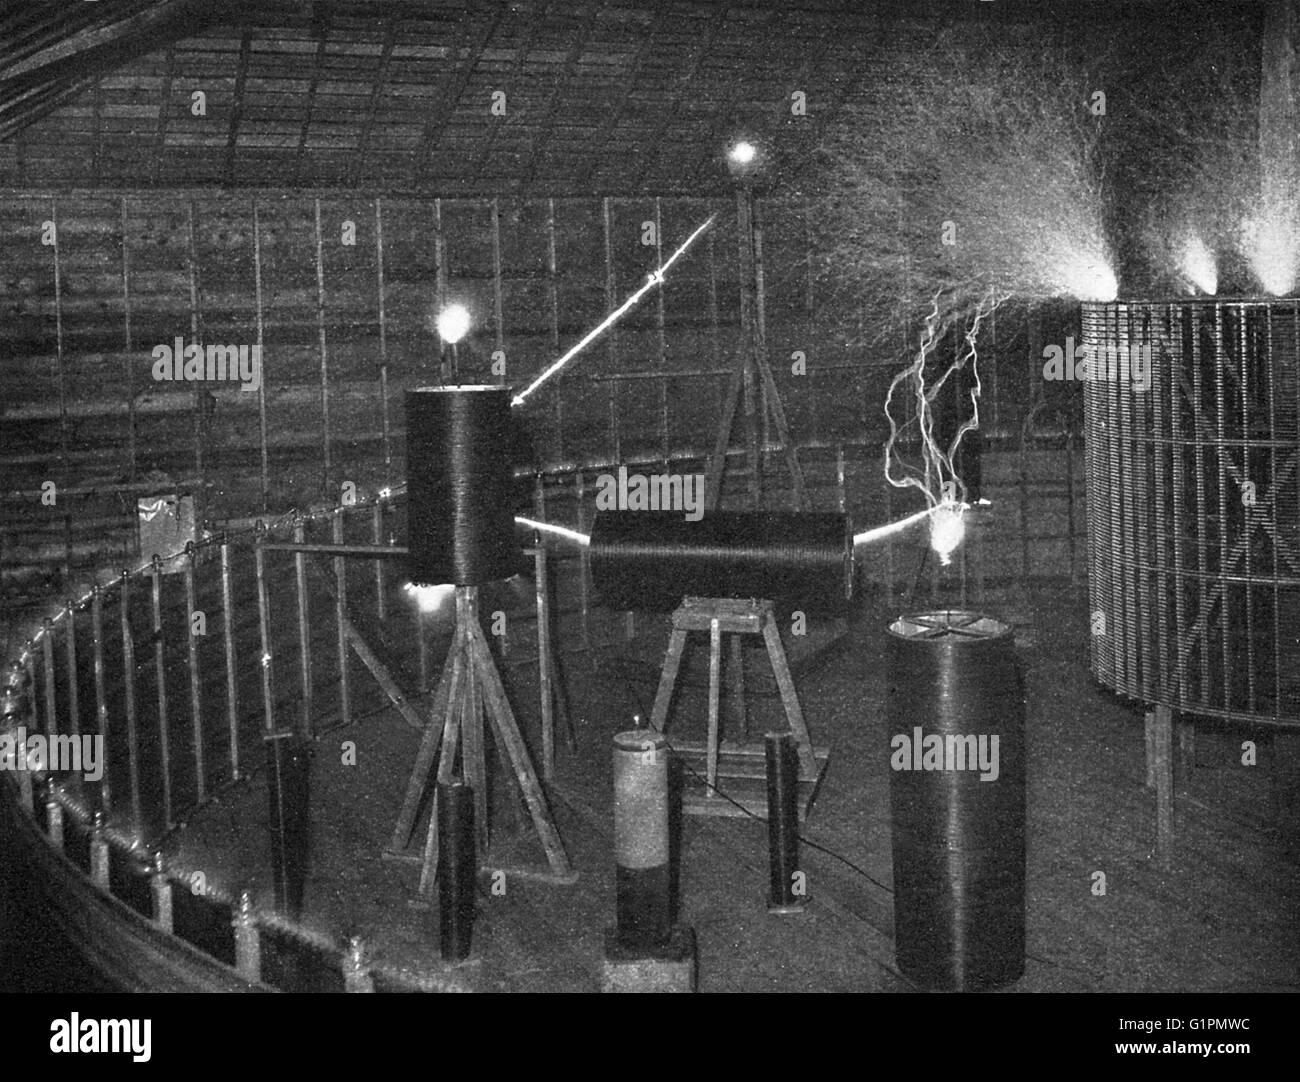 El laboratorio de Tesla C1900. Las bobinas responder a oscilaciones eléctricas durante una demostración en el laboratorio de Nikola Tesla en Colorado Springs, Colorado. Fotografía por Dickenson V. Alley, c1900. Foto de stock